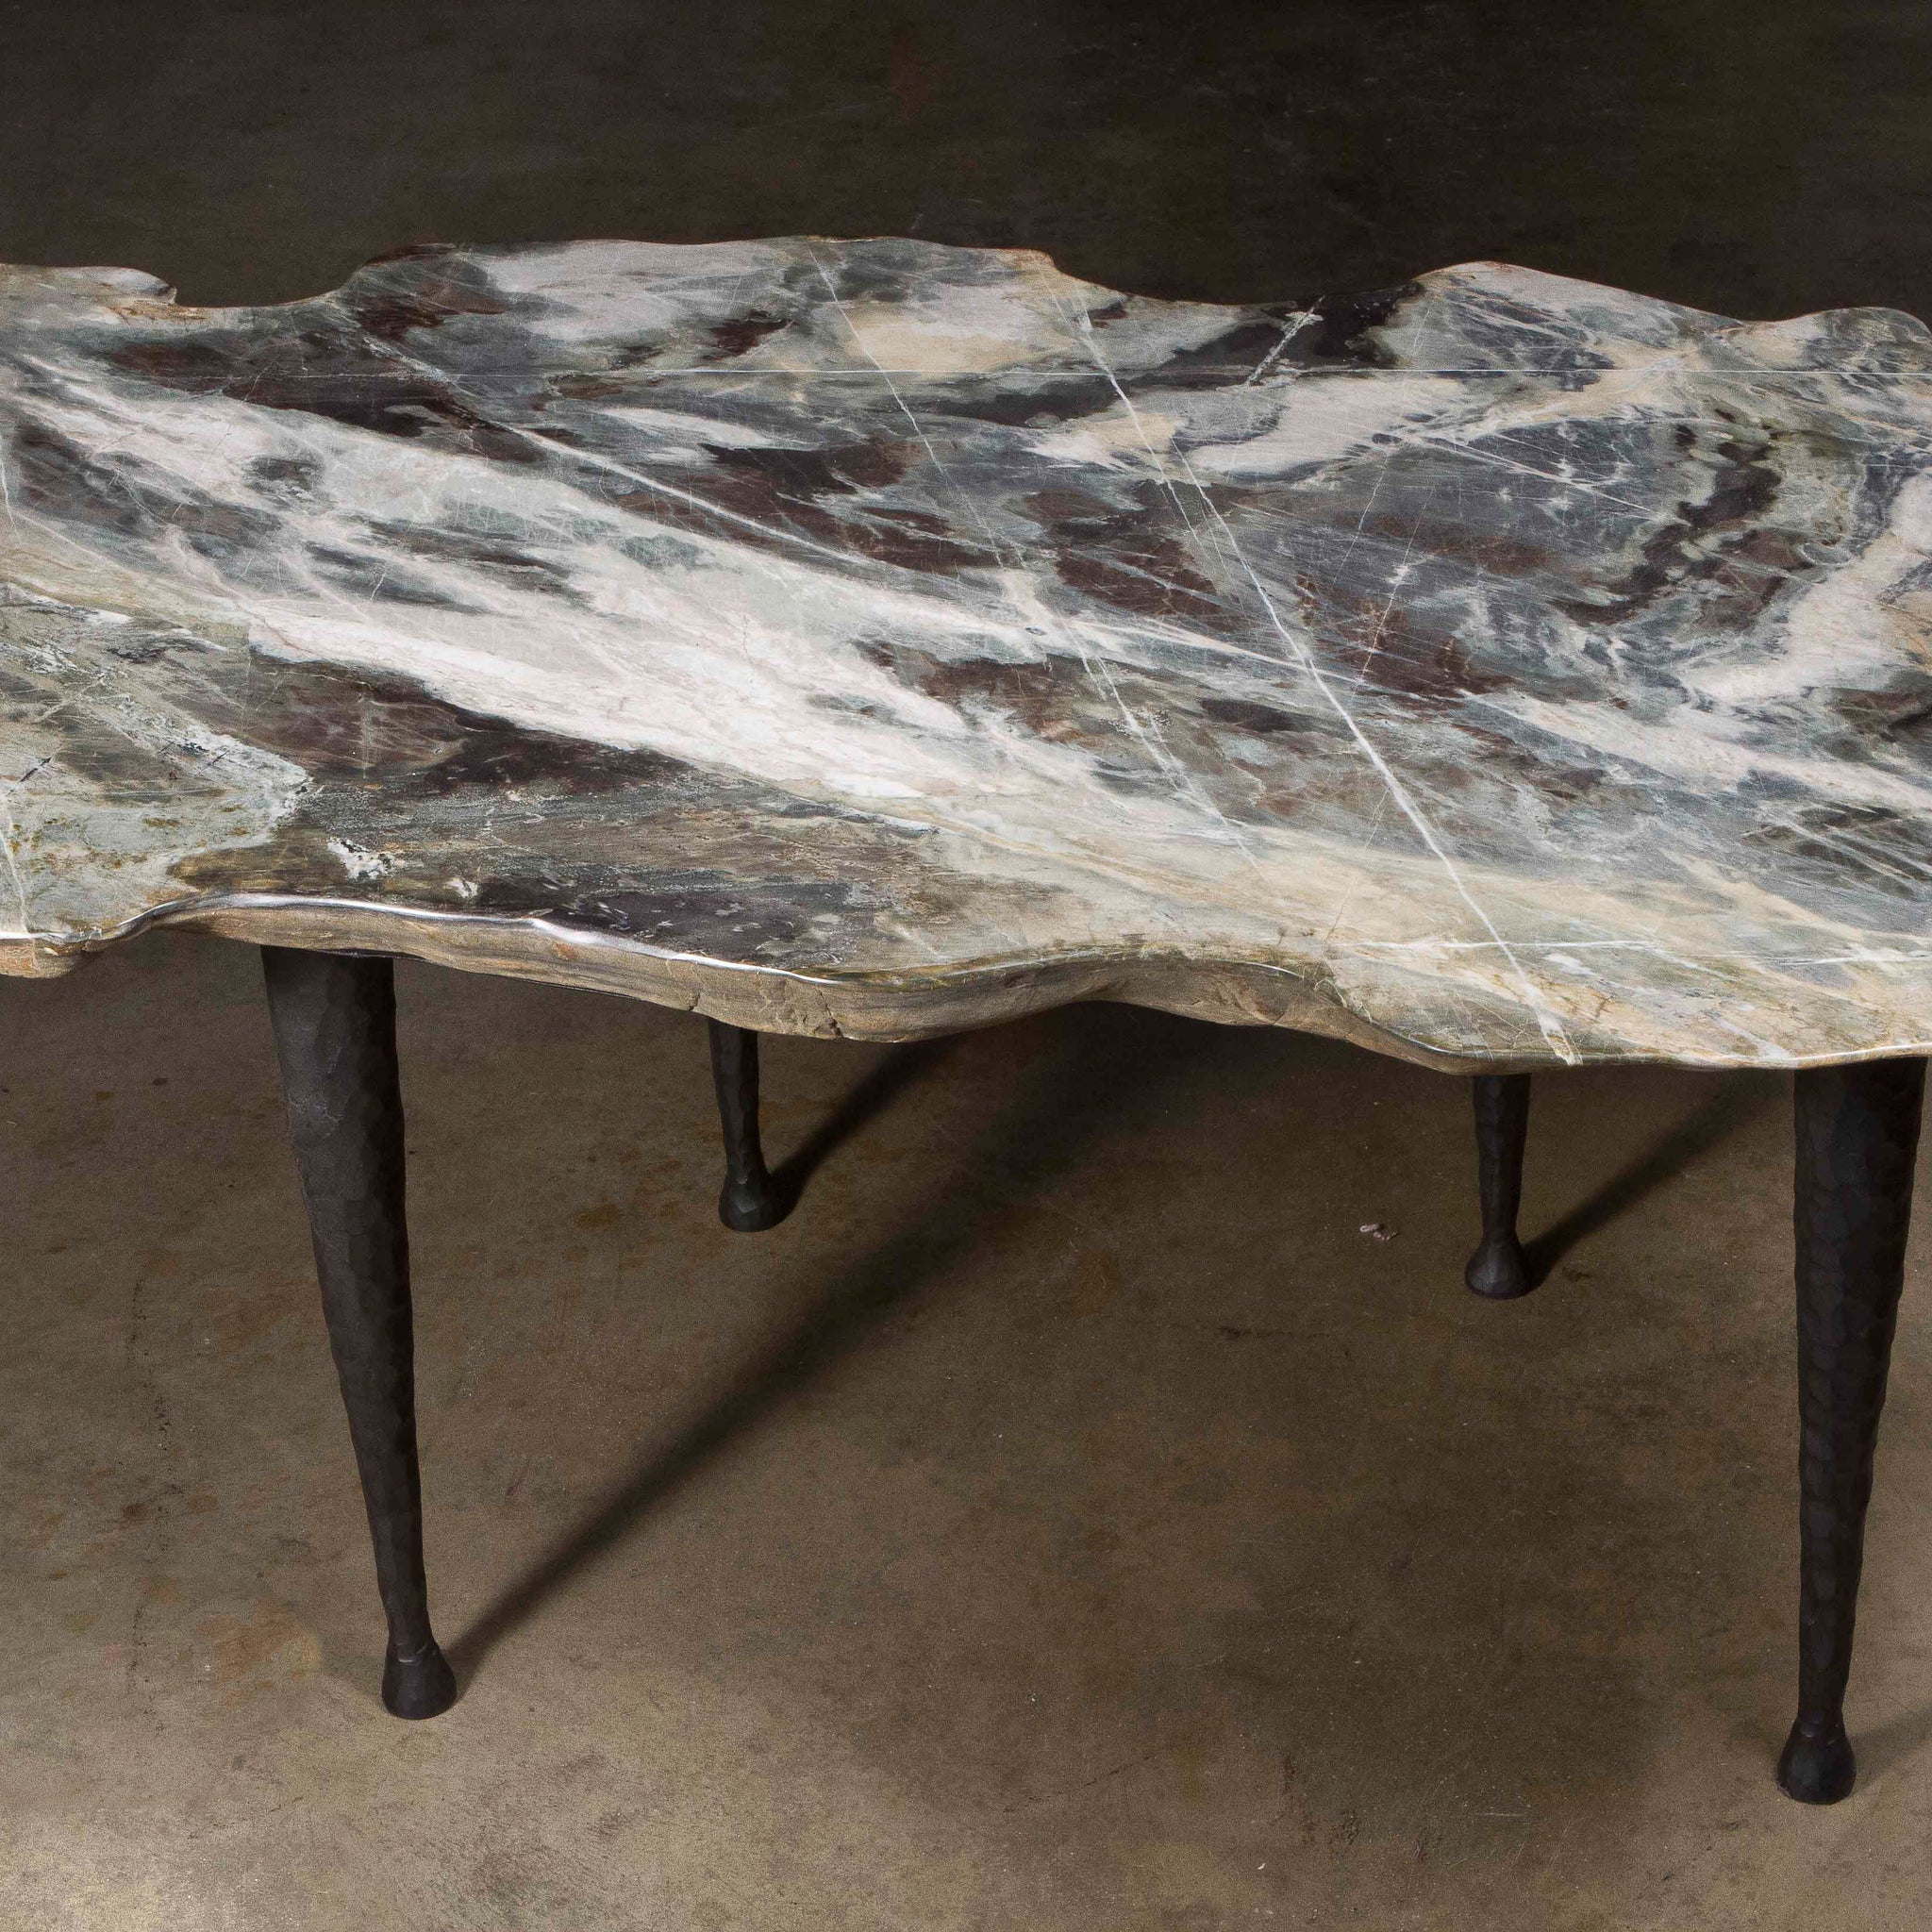 Stone Slab Boulder Table